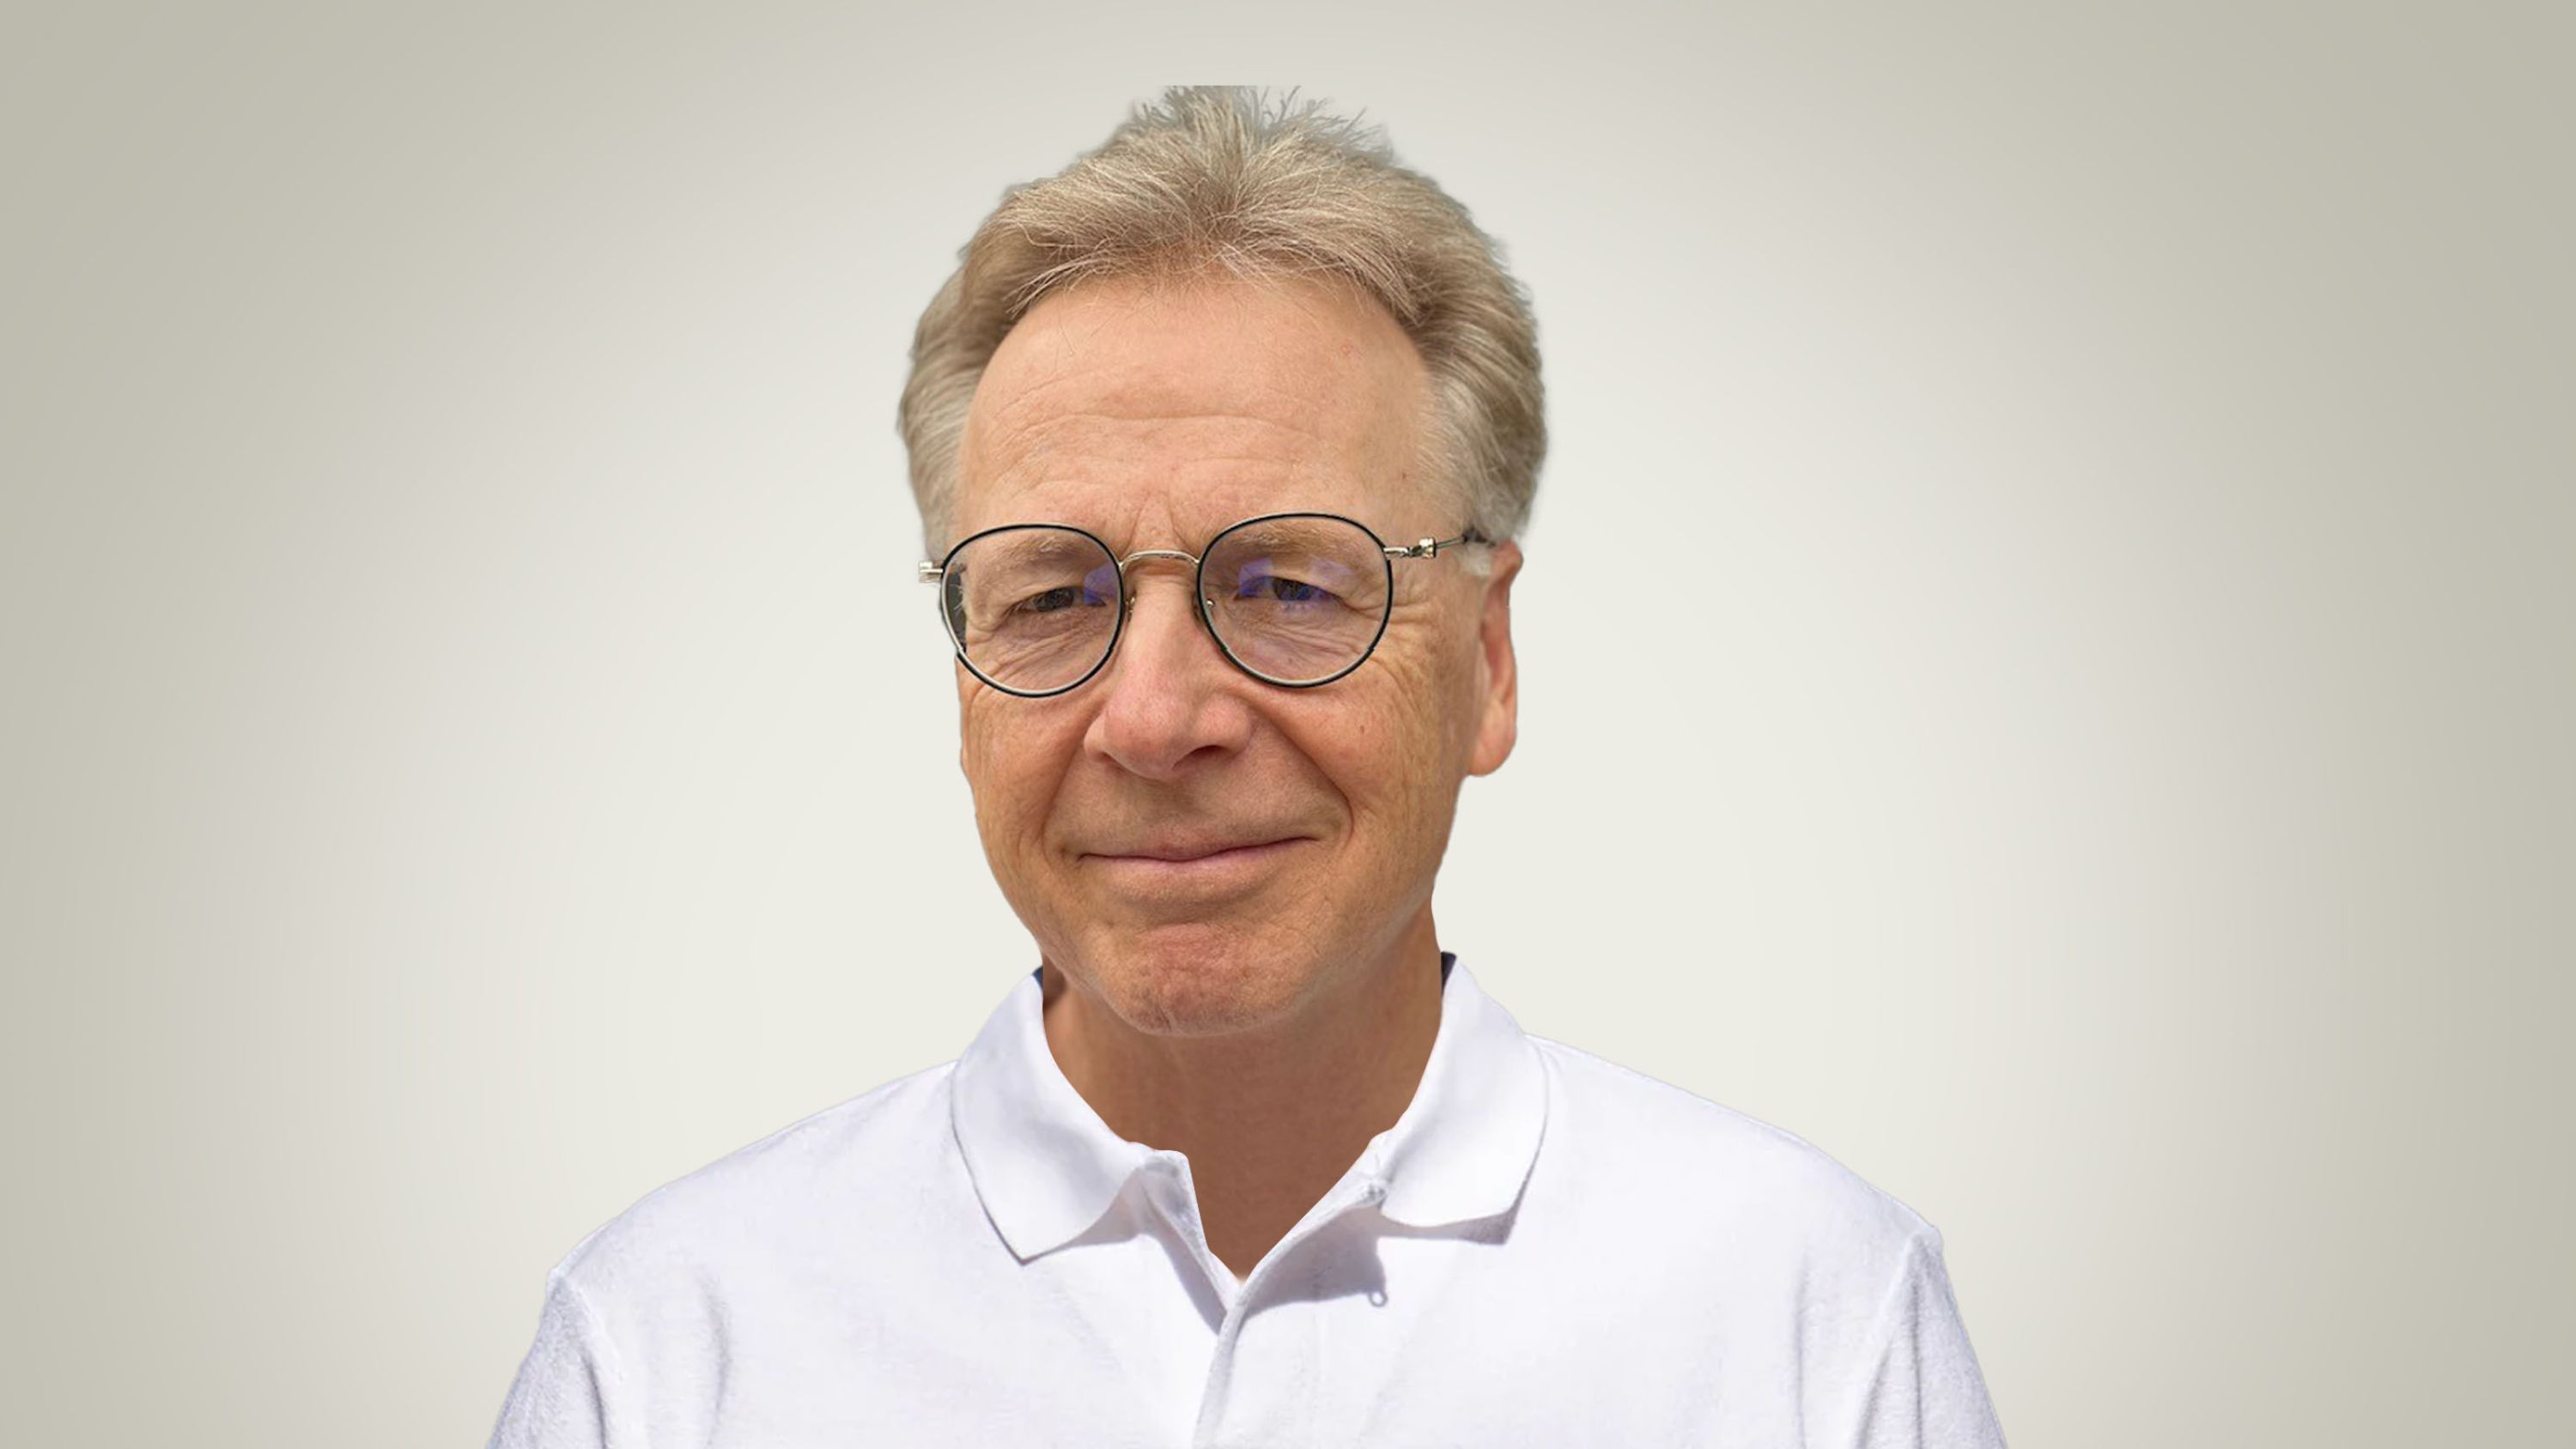 Peter Dietschi, Consiglio di fondazione Pro Senectute Svizzera